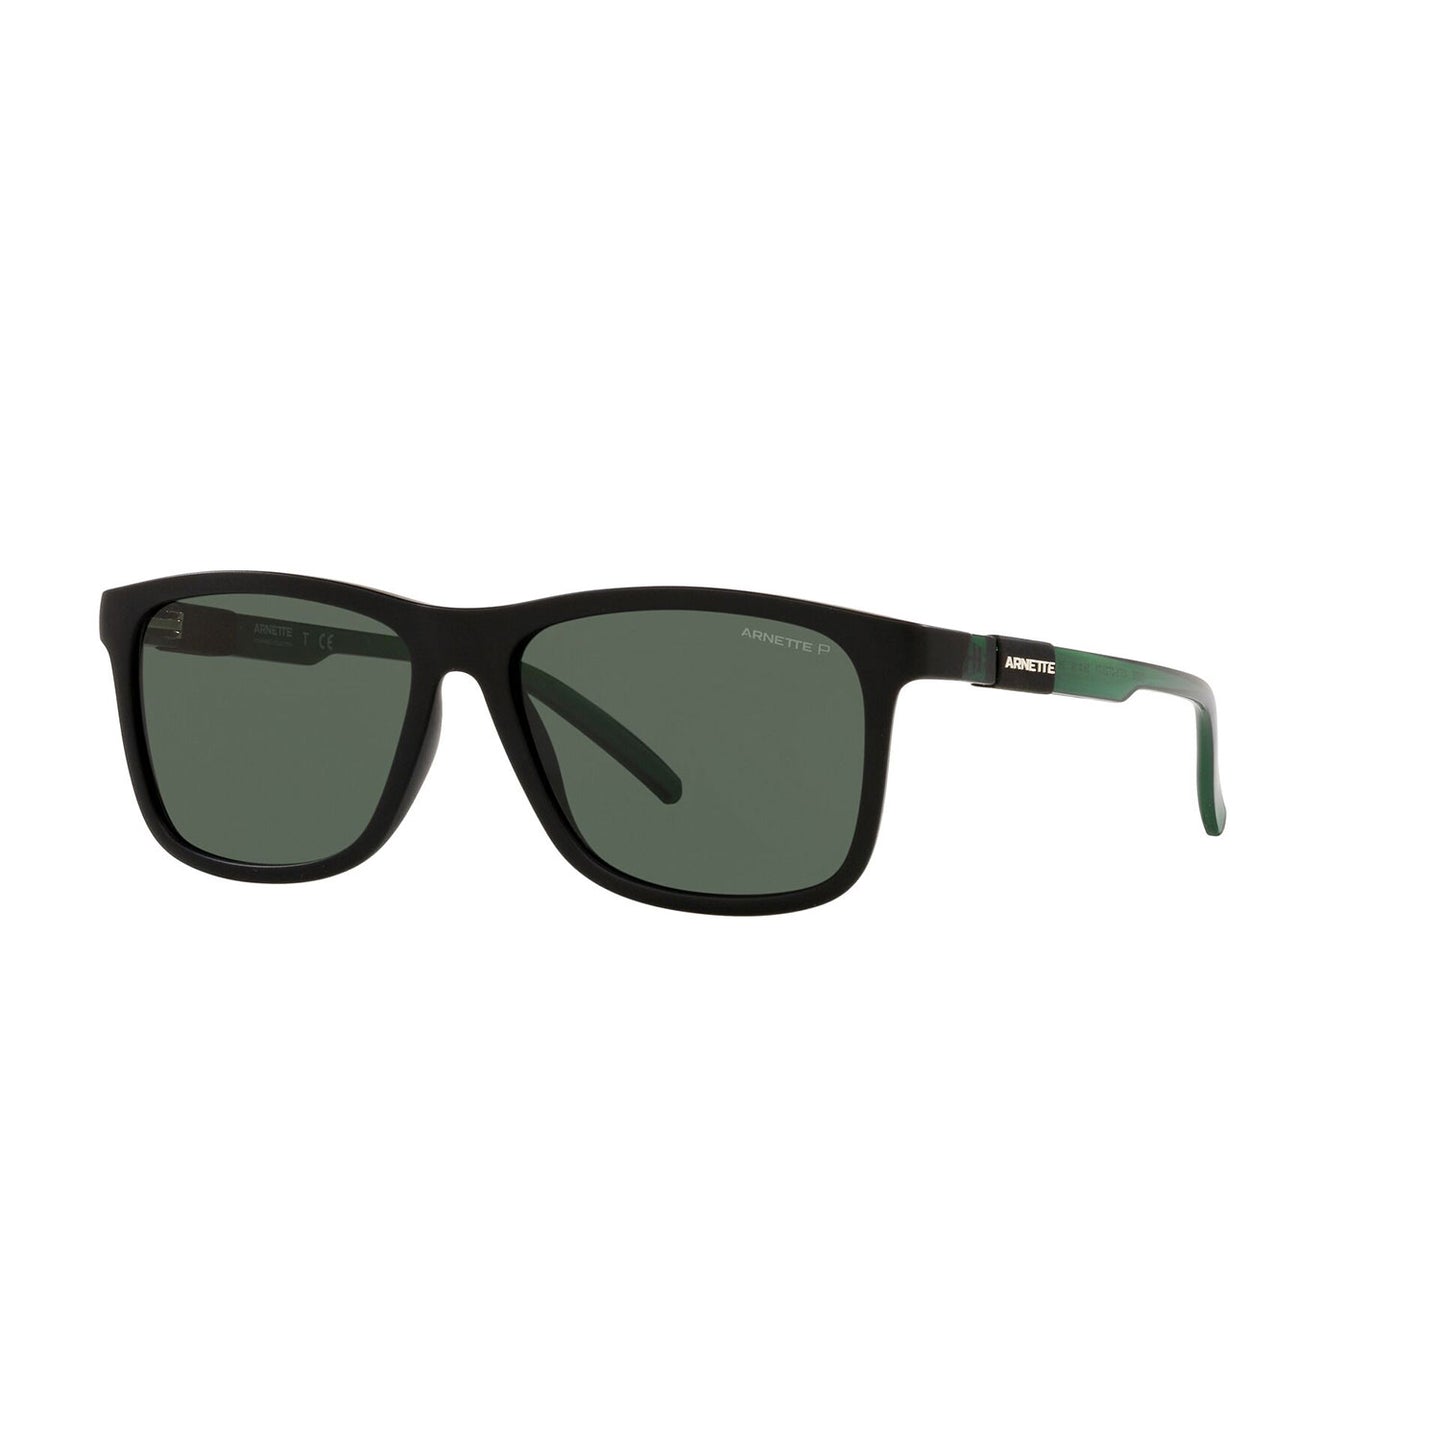 sunglasses arnette model 4276 color 2723/71